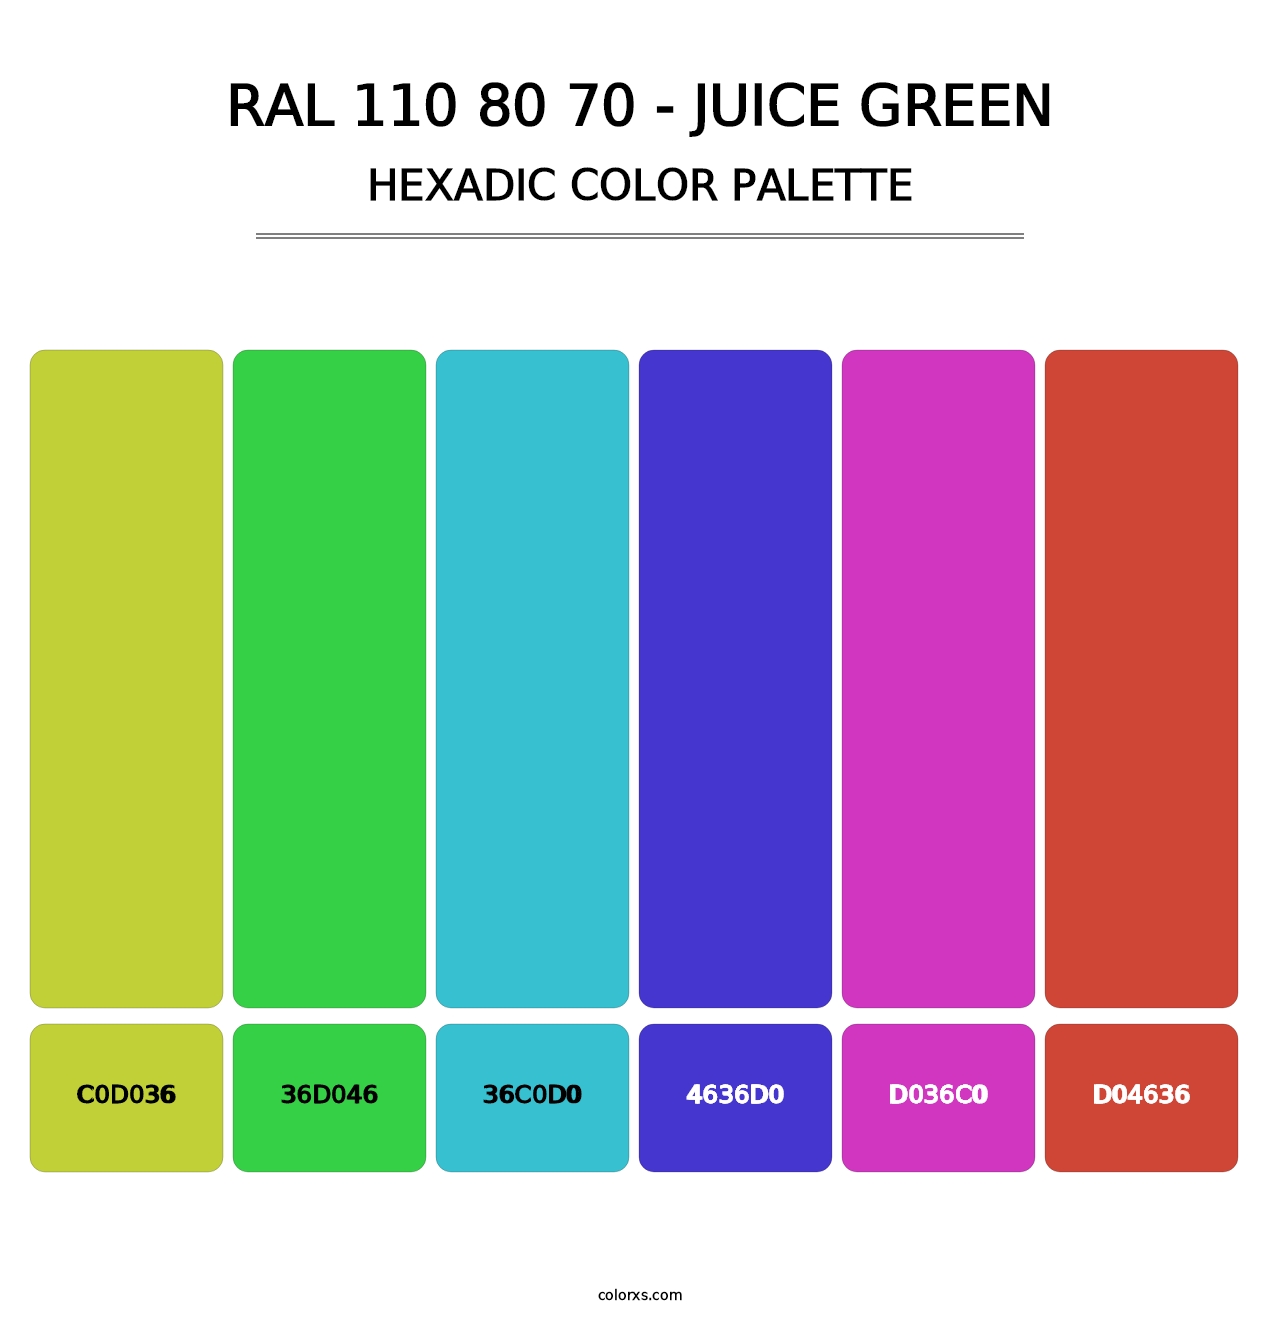 RAL 110 80 70 - Juice Green - Hexadic Color Palette